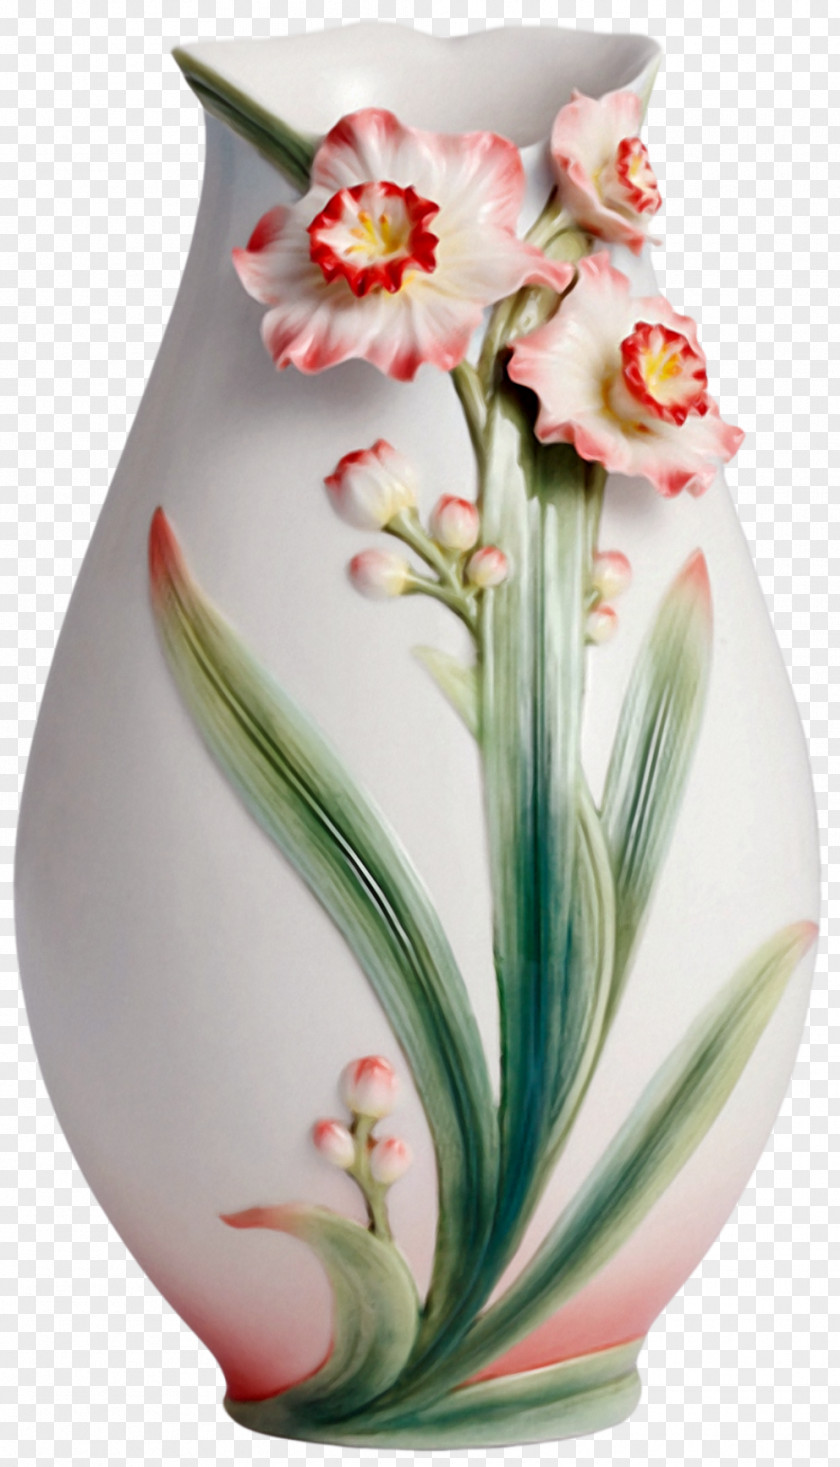 Vase Franz-porcelains Ceramic PNG